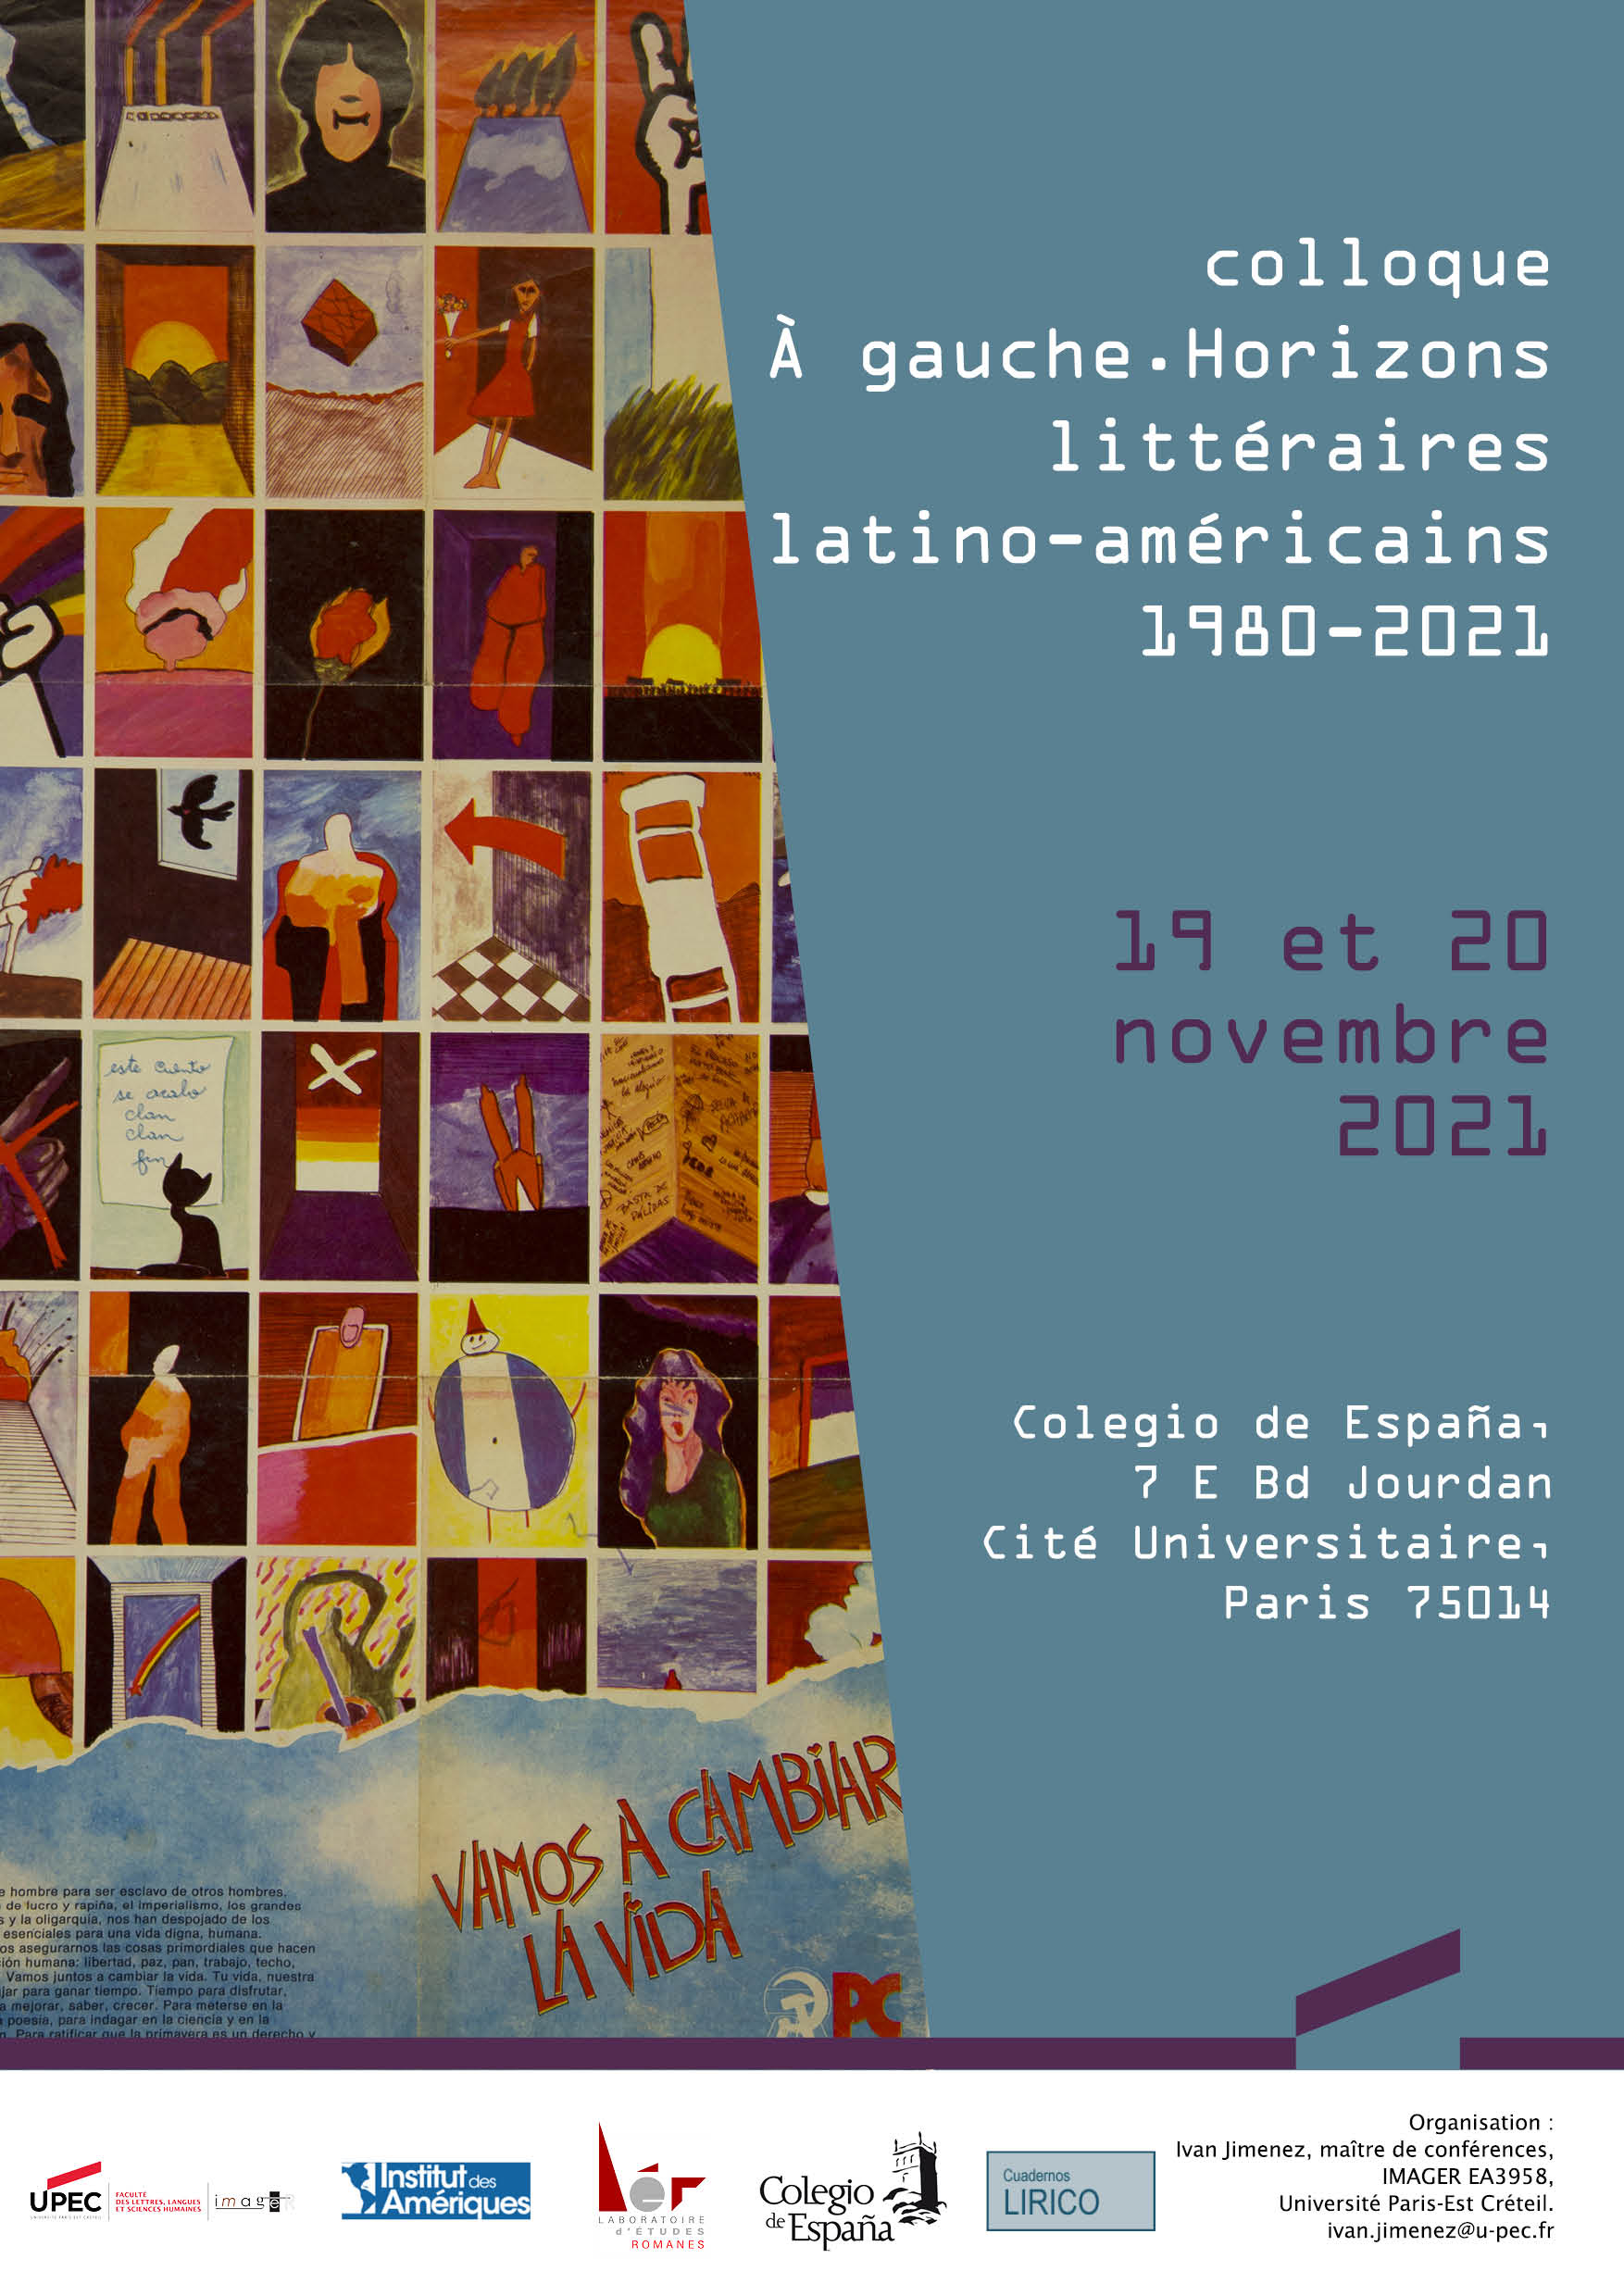 Affiche colloque À gauche. Horizons littéraires latino-américains 1980-2021